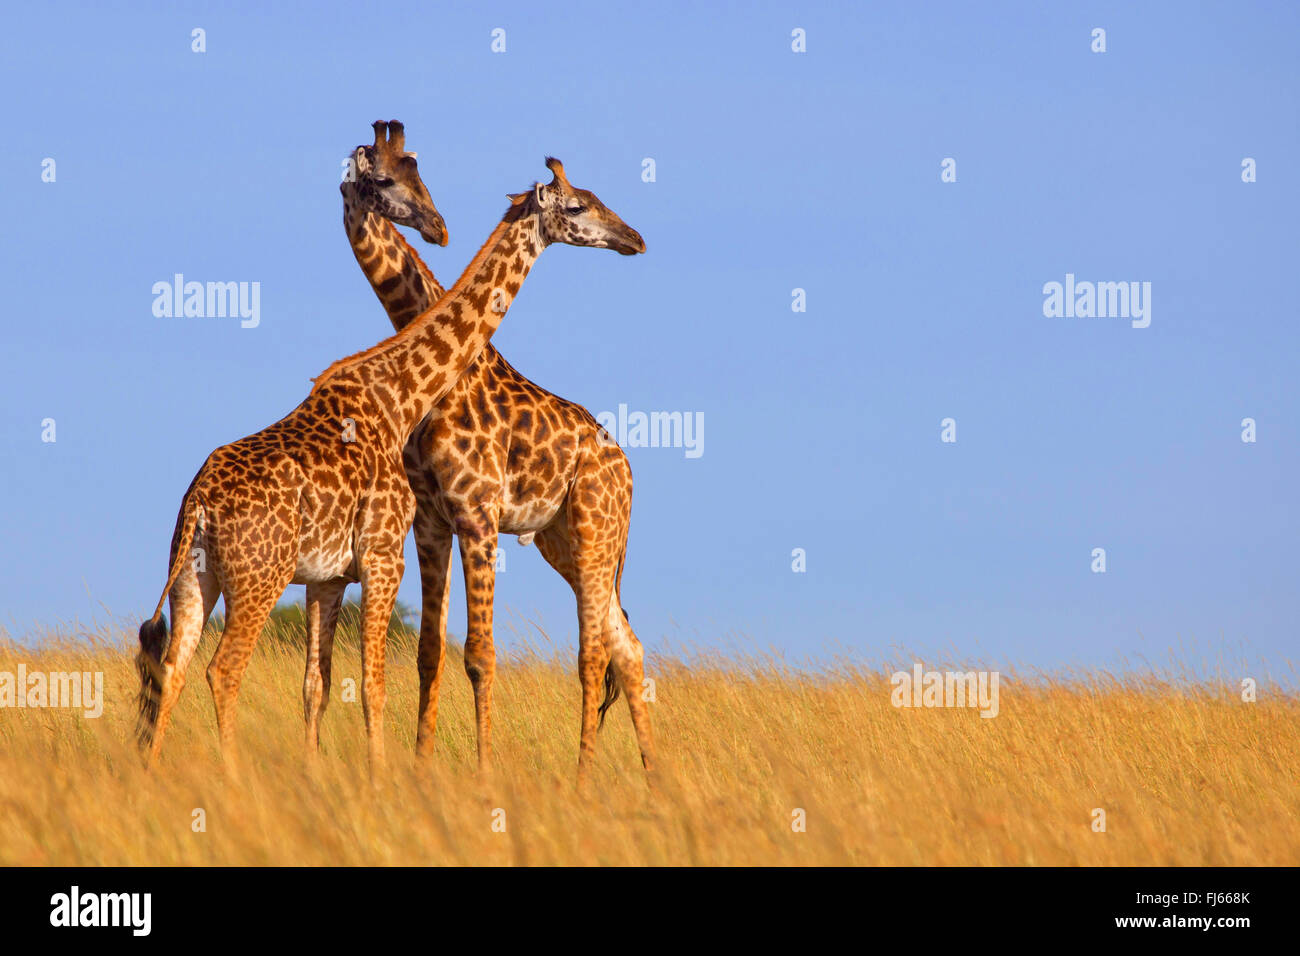 Masai giraffe (Giraffa camelopardalis tippelskirchi), two giraffes in savannah, Kenya, Masai Mara National Park Stock Photo